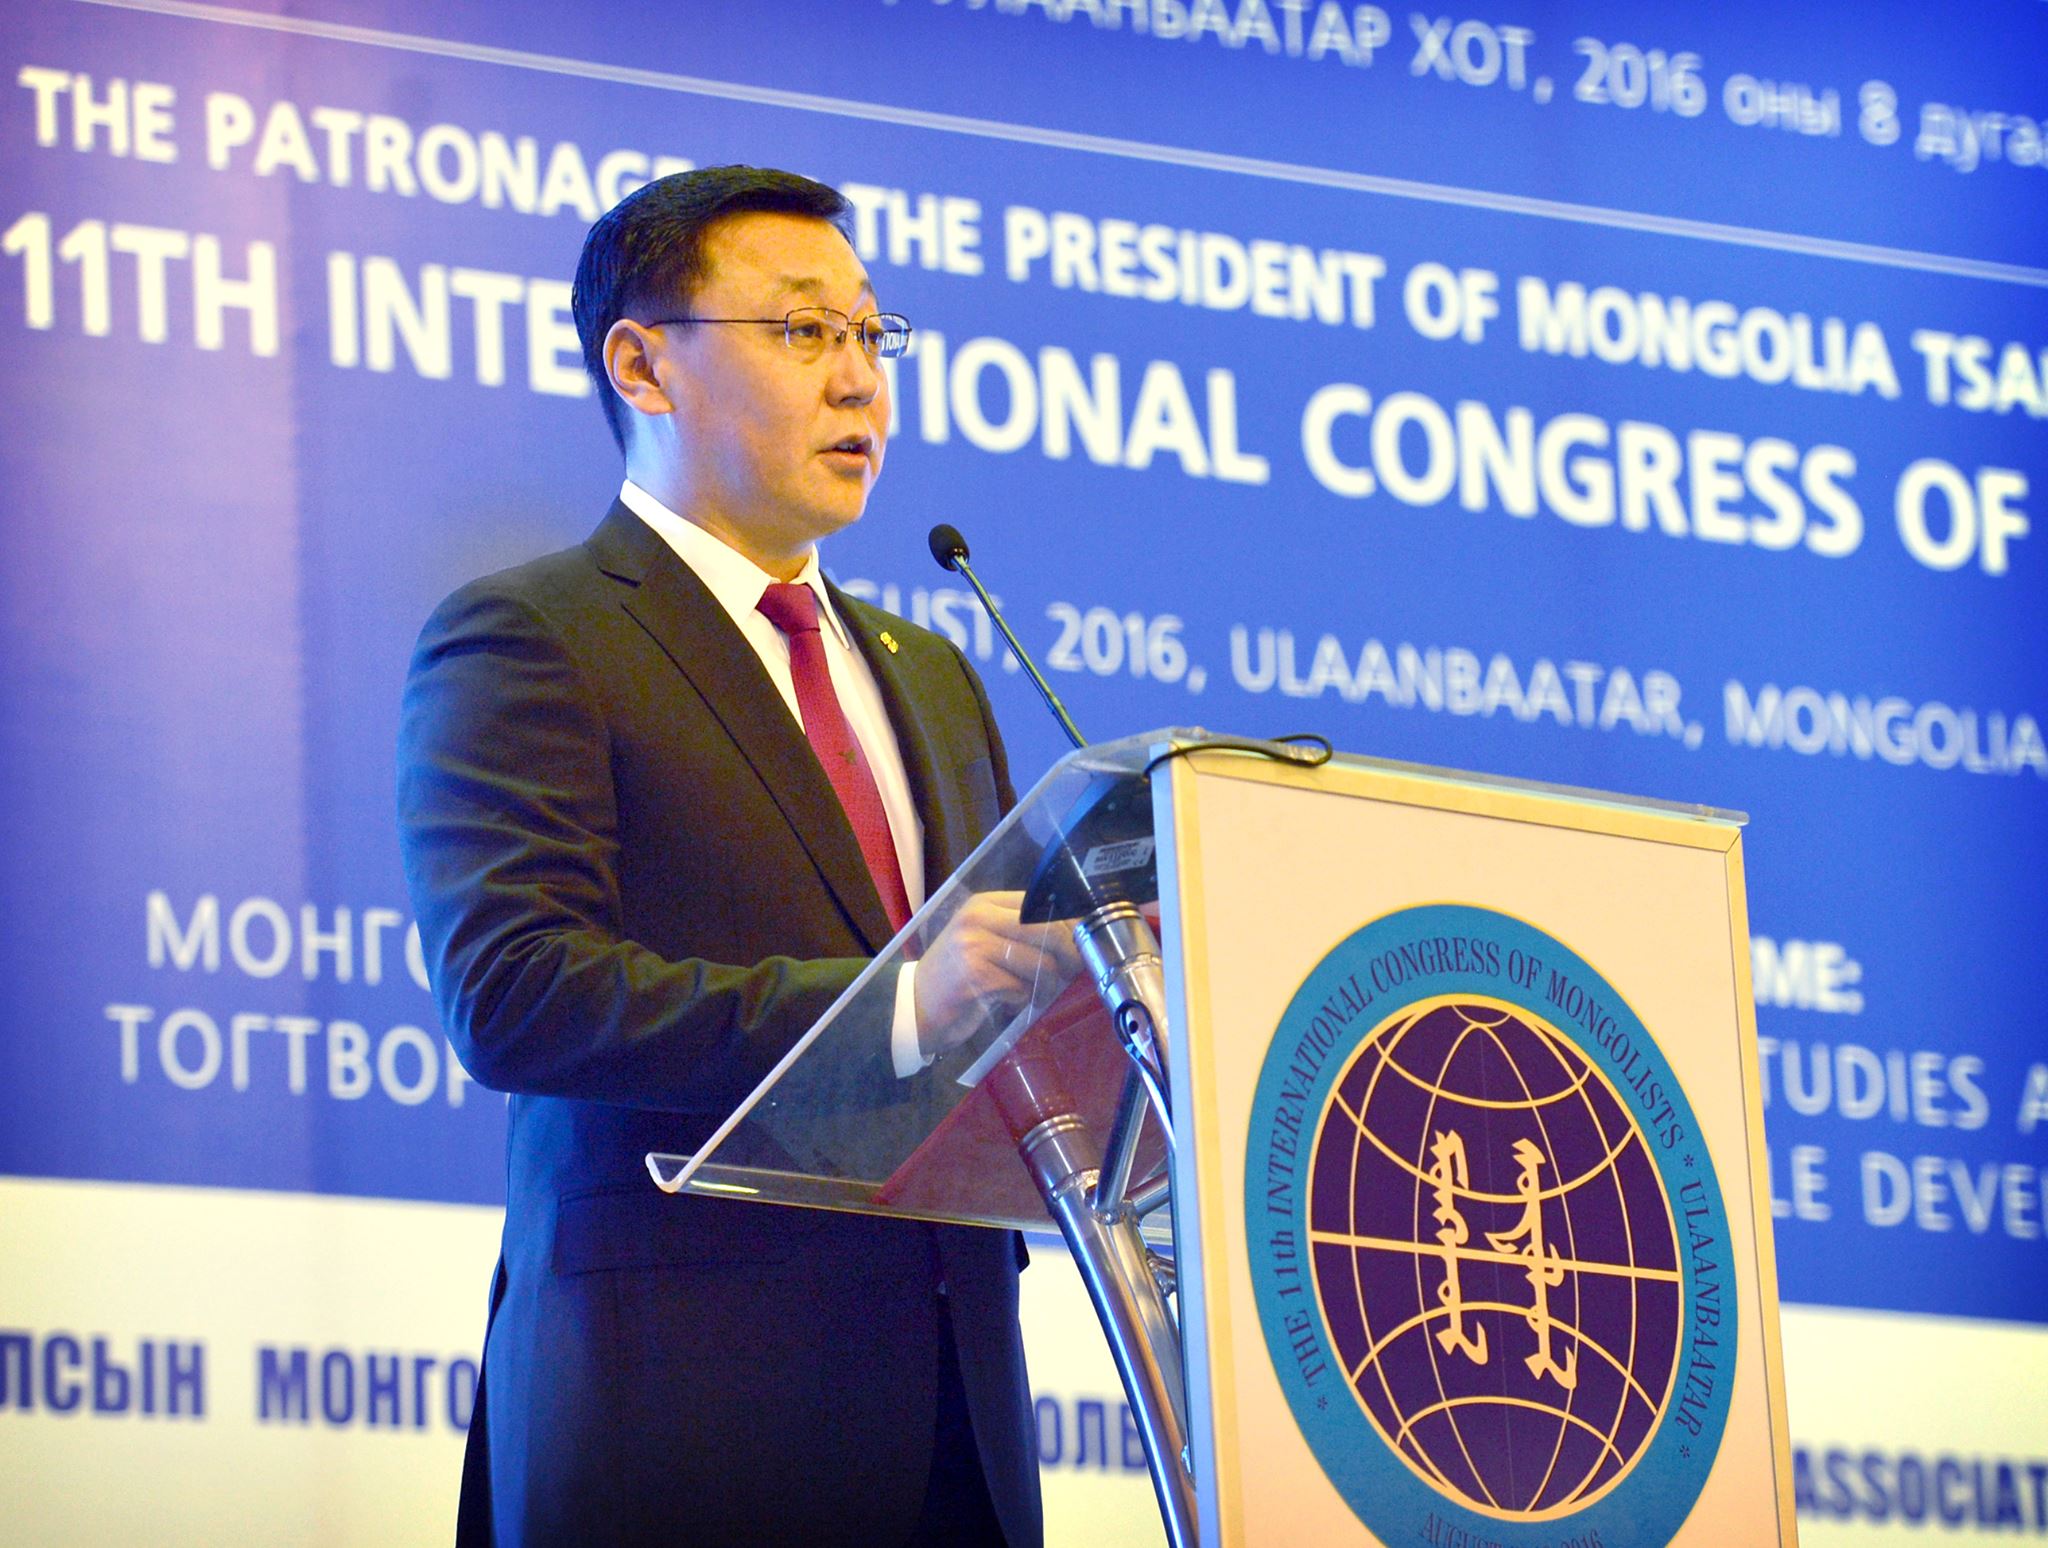 Ж.Эрдэнэбат: Монгол судлалын чанар, үр дүнг шинэ шатанд гаргах хэрэгтэй